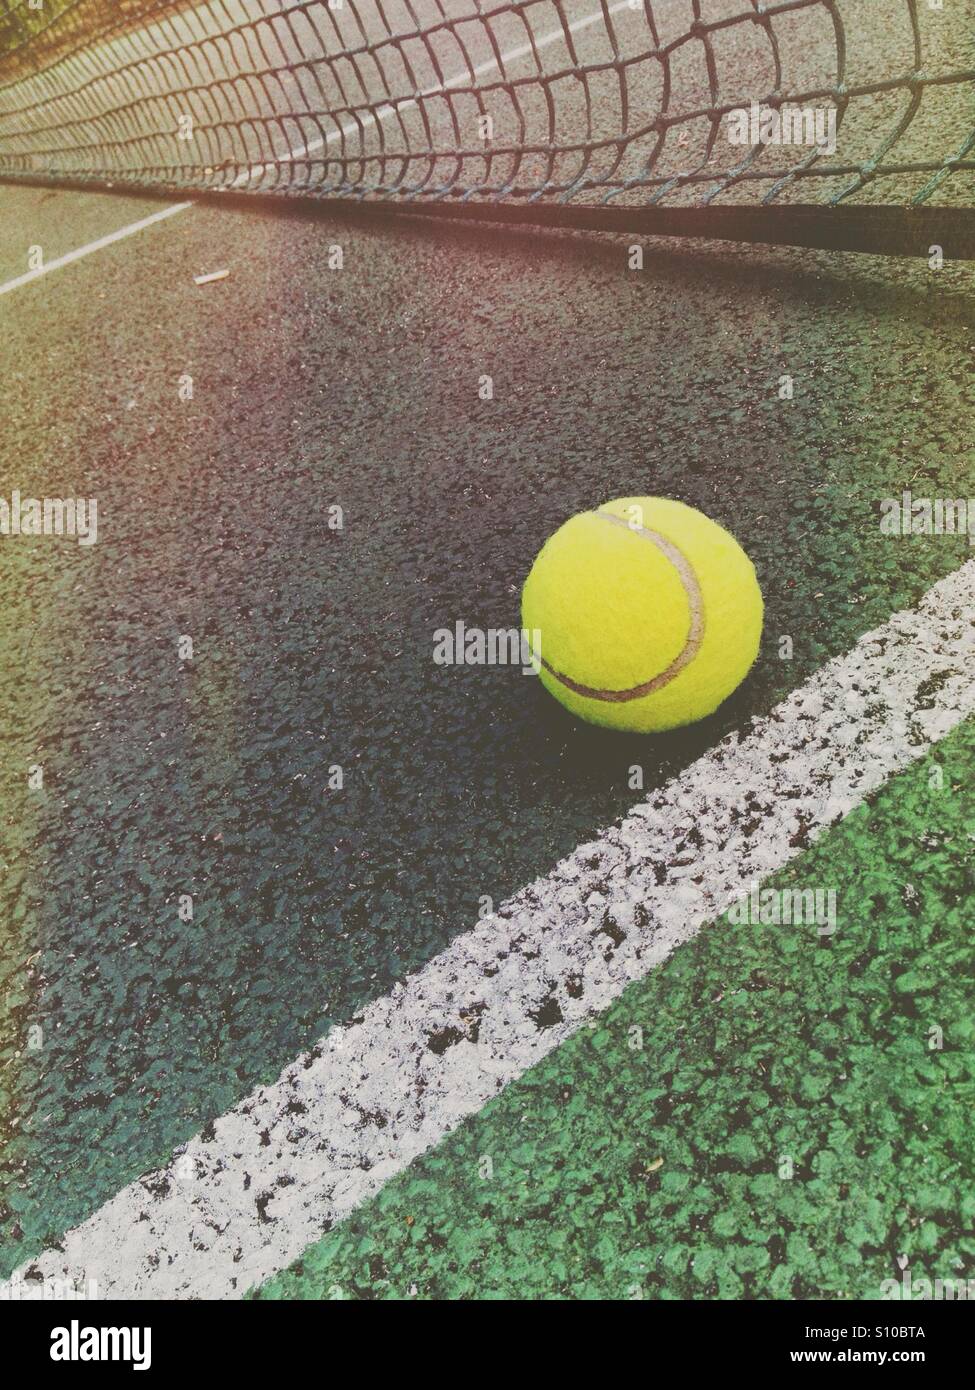 Tennis ball near a net on a tennis court Stock Photo